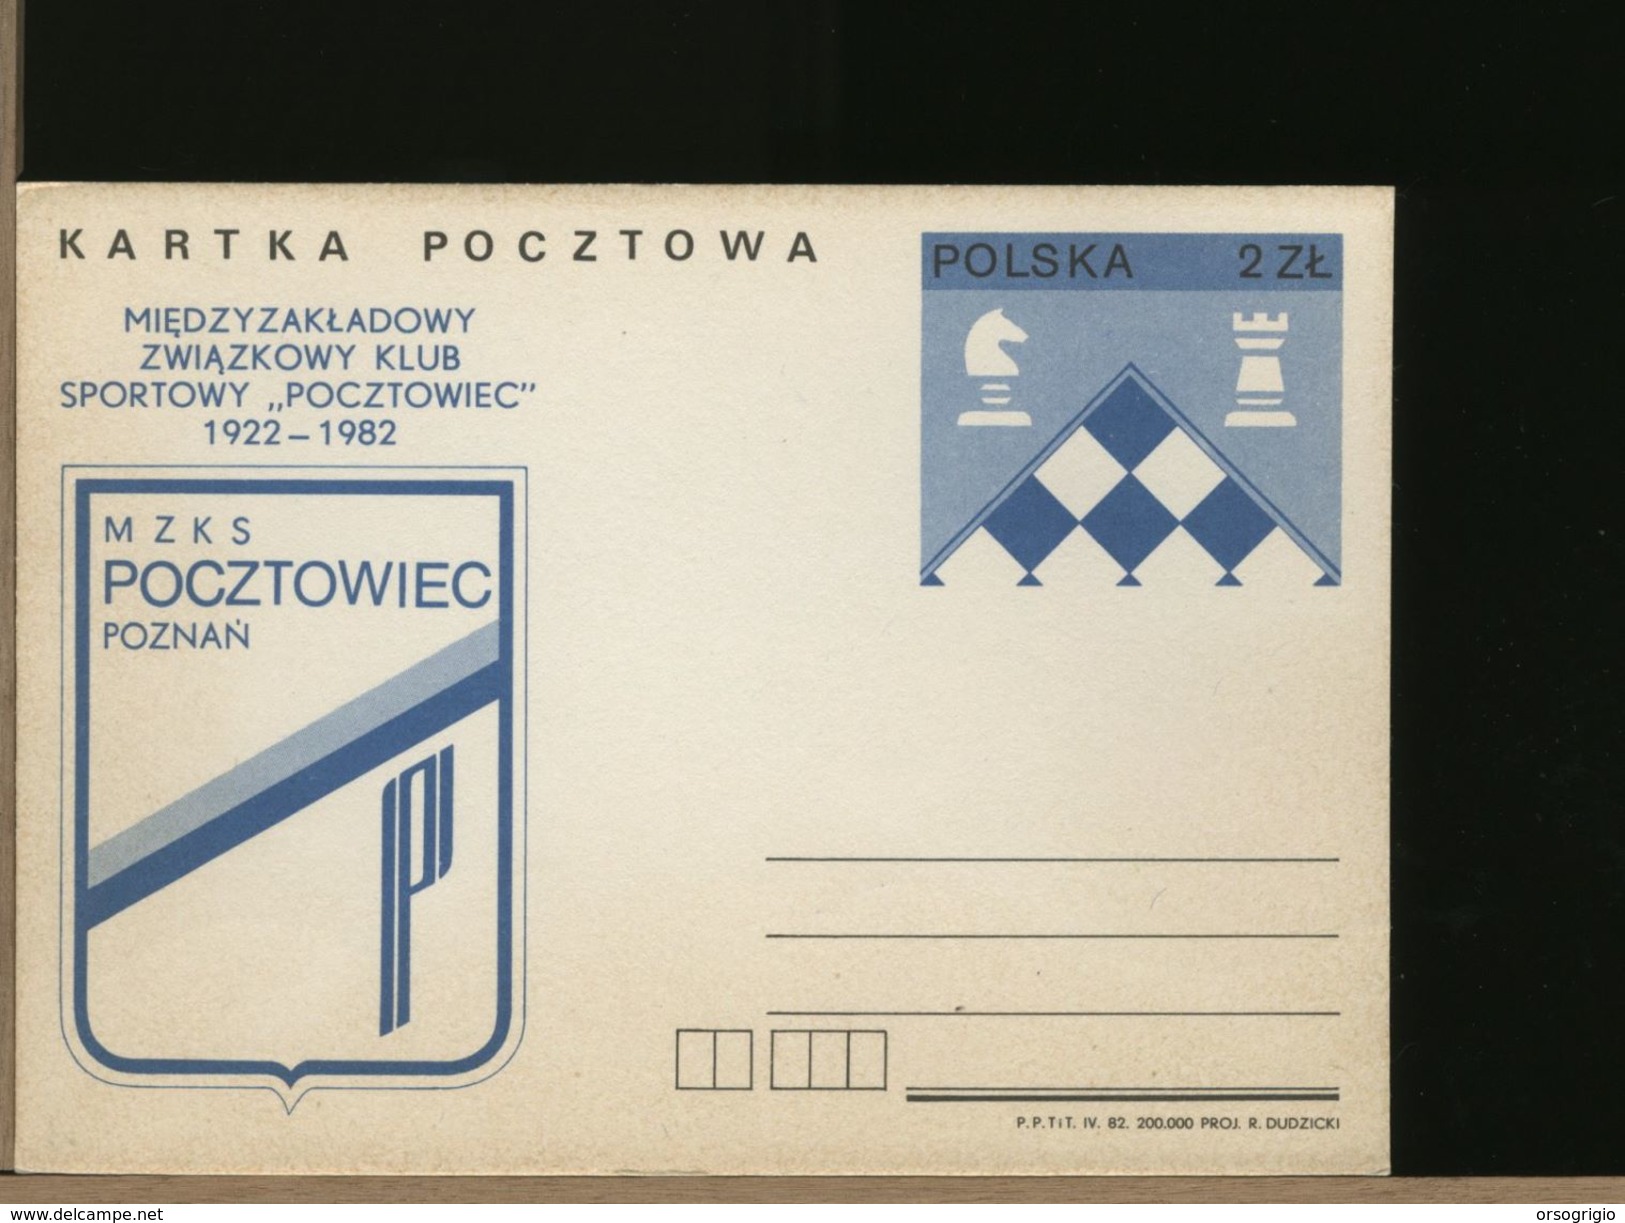 POLSKA - CP - Cartolina Intero Postale - Chess - Scacchi - Pocztowiec Poznan - Scacchi